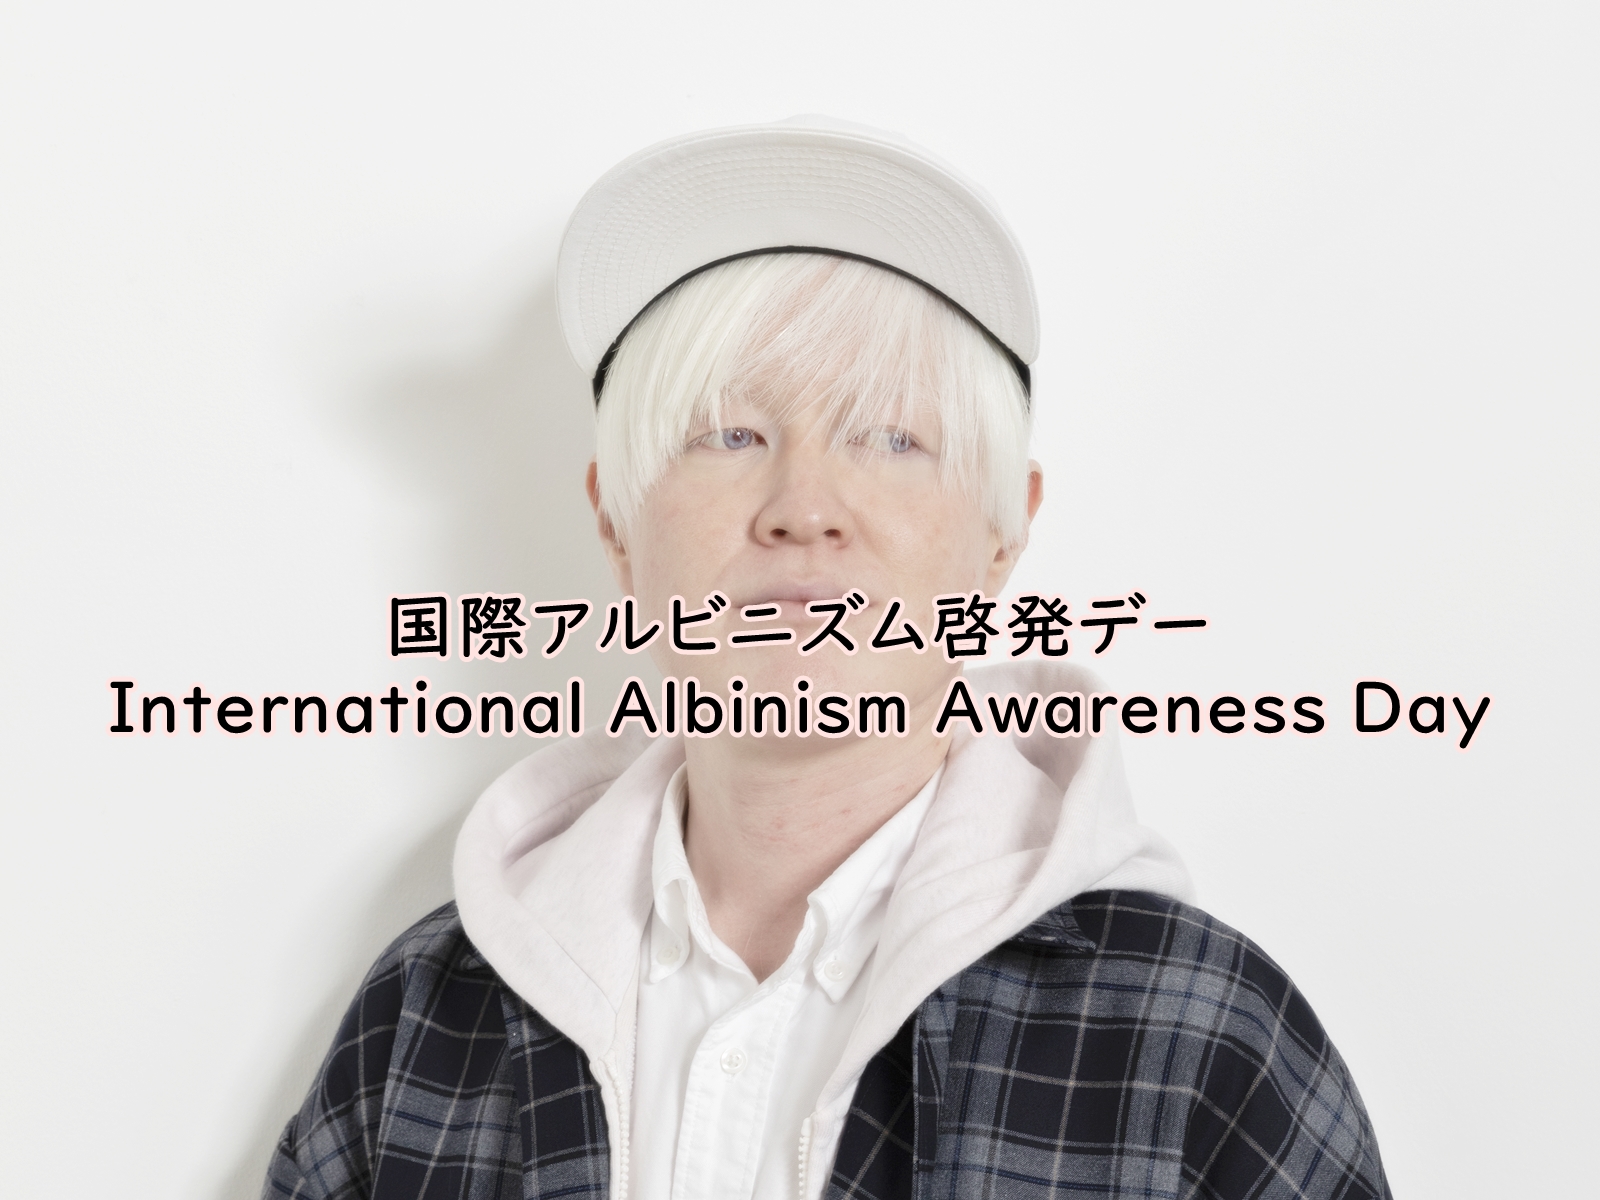 【国際アルビニズム啓発デー】日本でも「アルビノの人々の“いまからみらい”」を一緒に考えて発信しよう